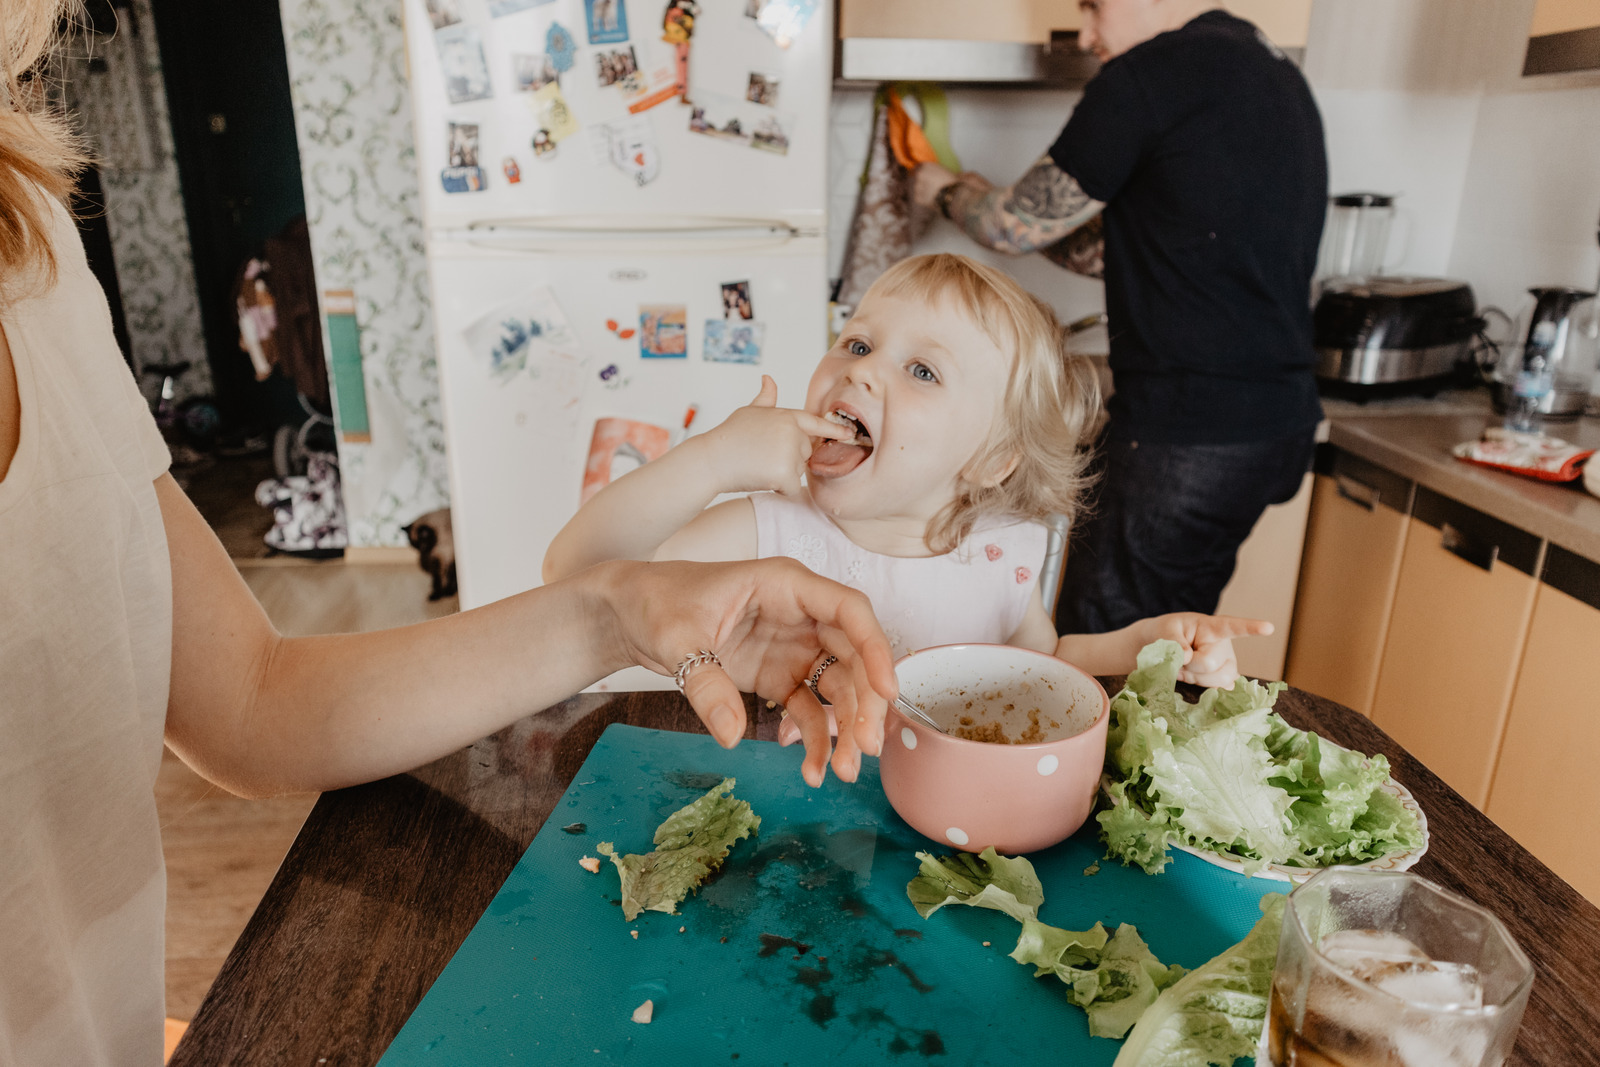 Criança experimentando alimentos em uma mesa de uma cozinha